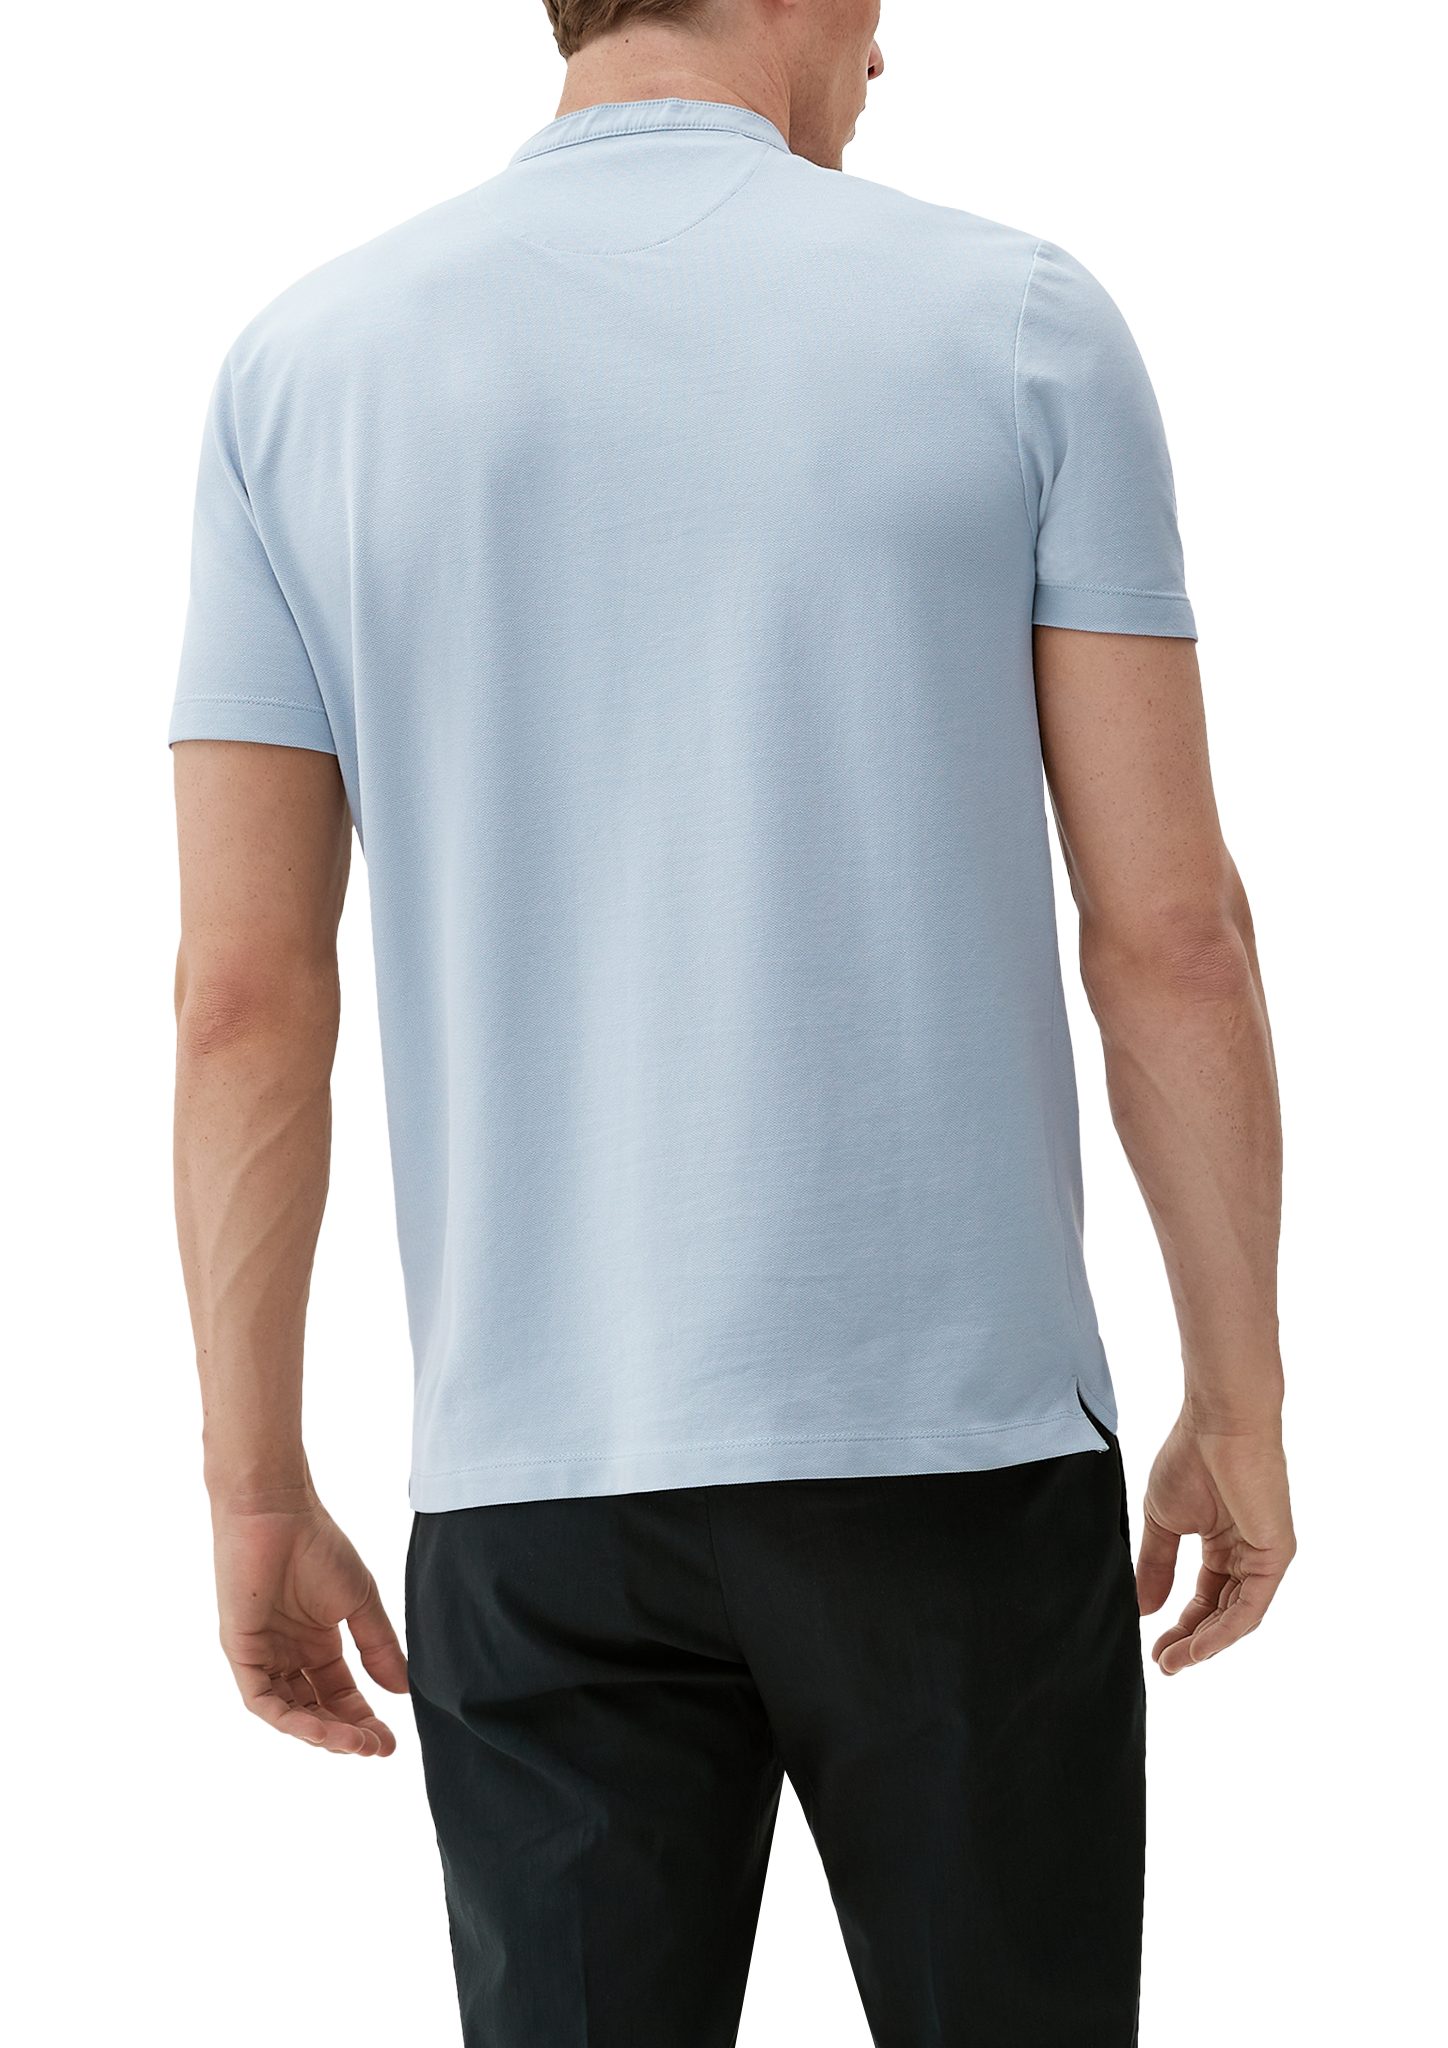 Kurzarmshirt mit Henleyausschnitt hellblau T-Shirt s.Oliver